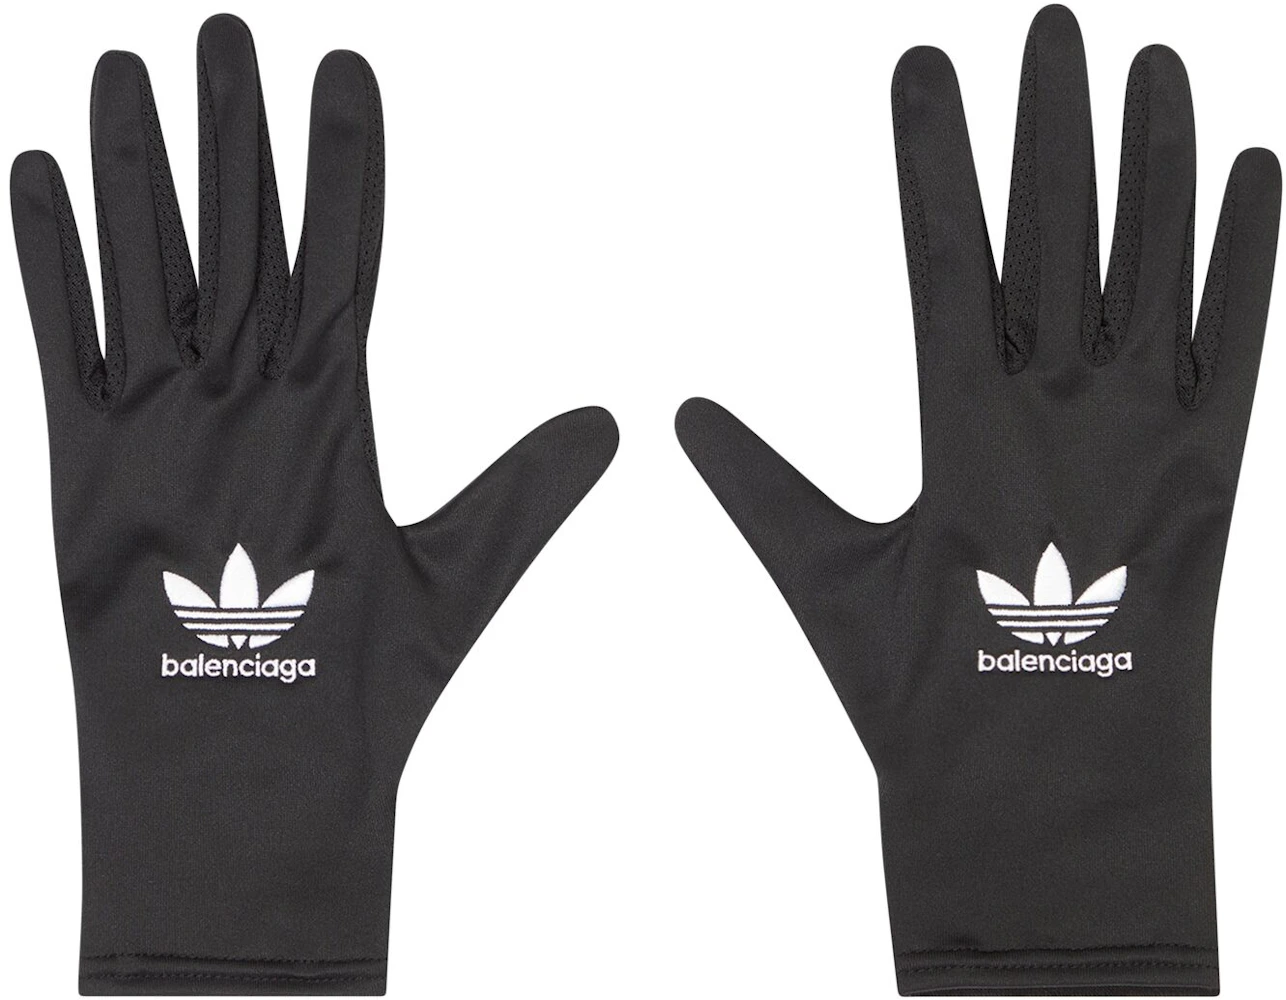 Balenciaga x adidas Gloves Black Men's - FW22 - US